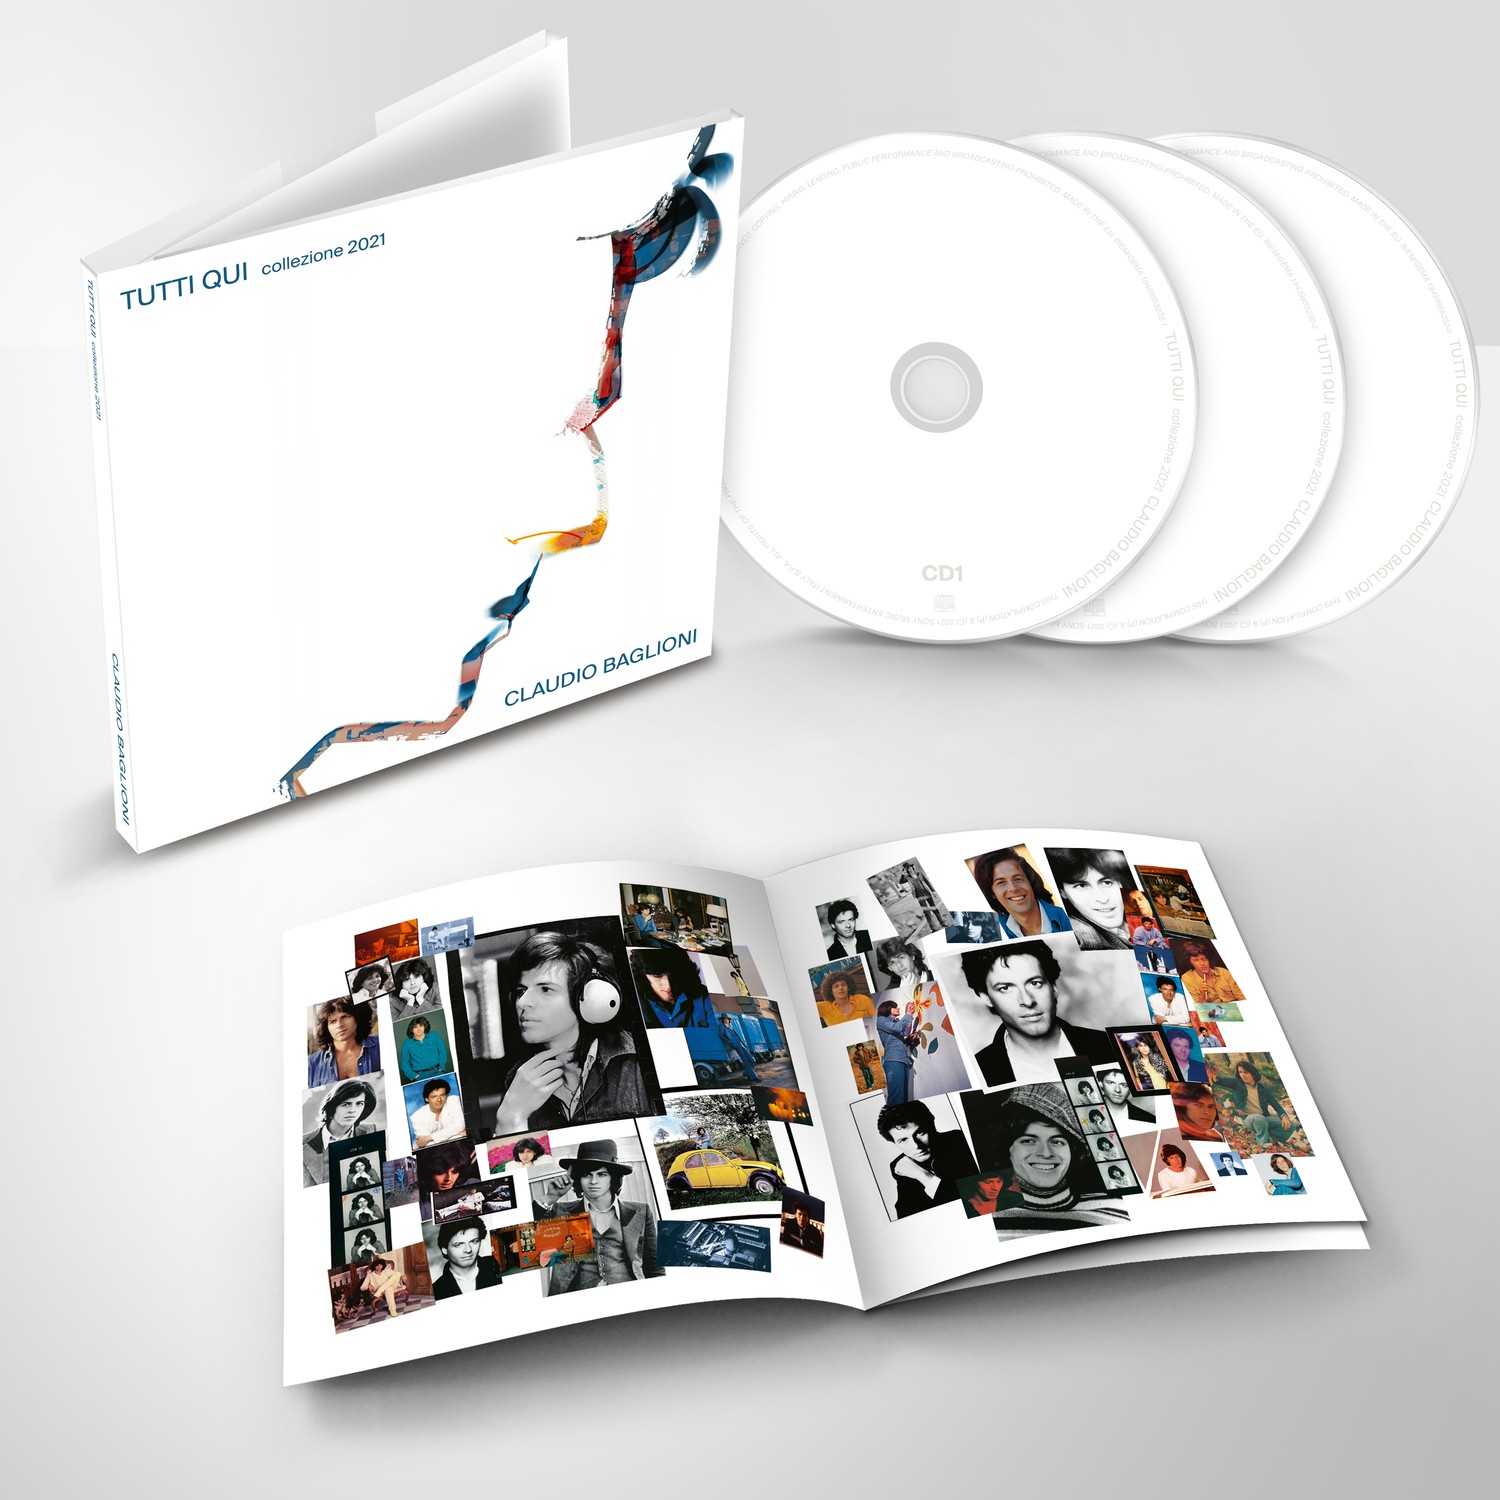 Claudio Baglioni - Tutti Qui collezione 2021 3 CD - Discomania Mix